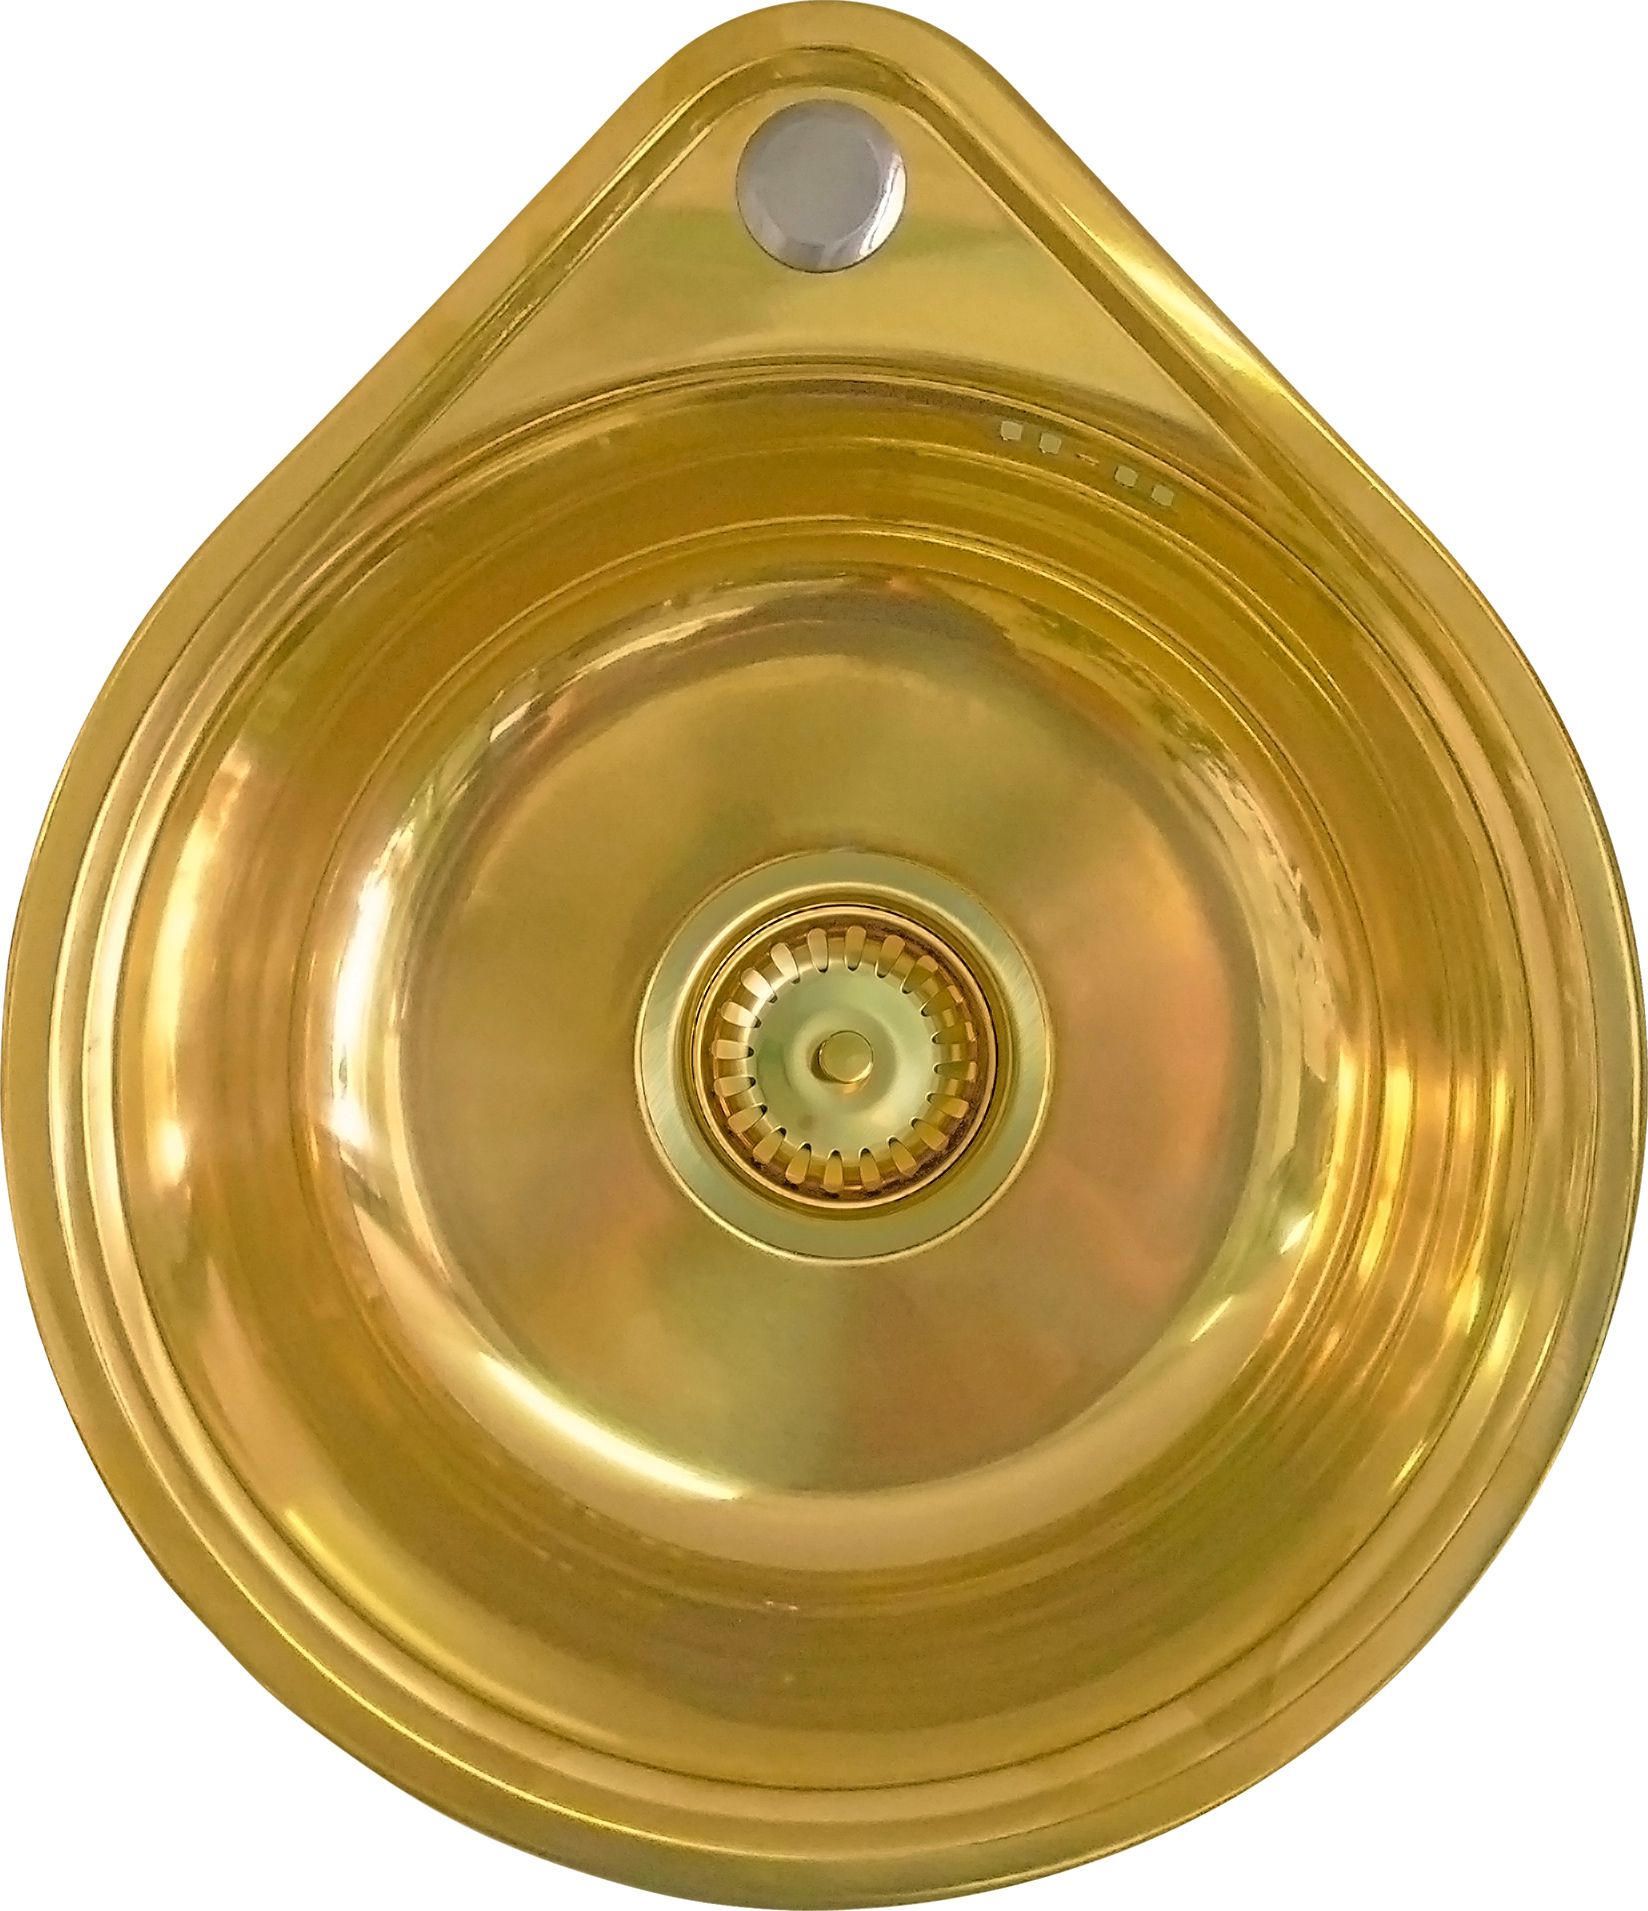 Мойка кухонная Seaman Eco Wien SWT-3945-Gold polish, медь, нержавеющая сталь  - купить со скидкой